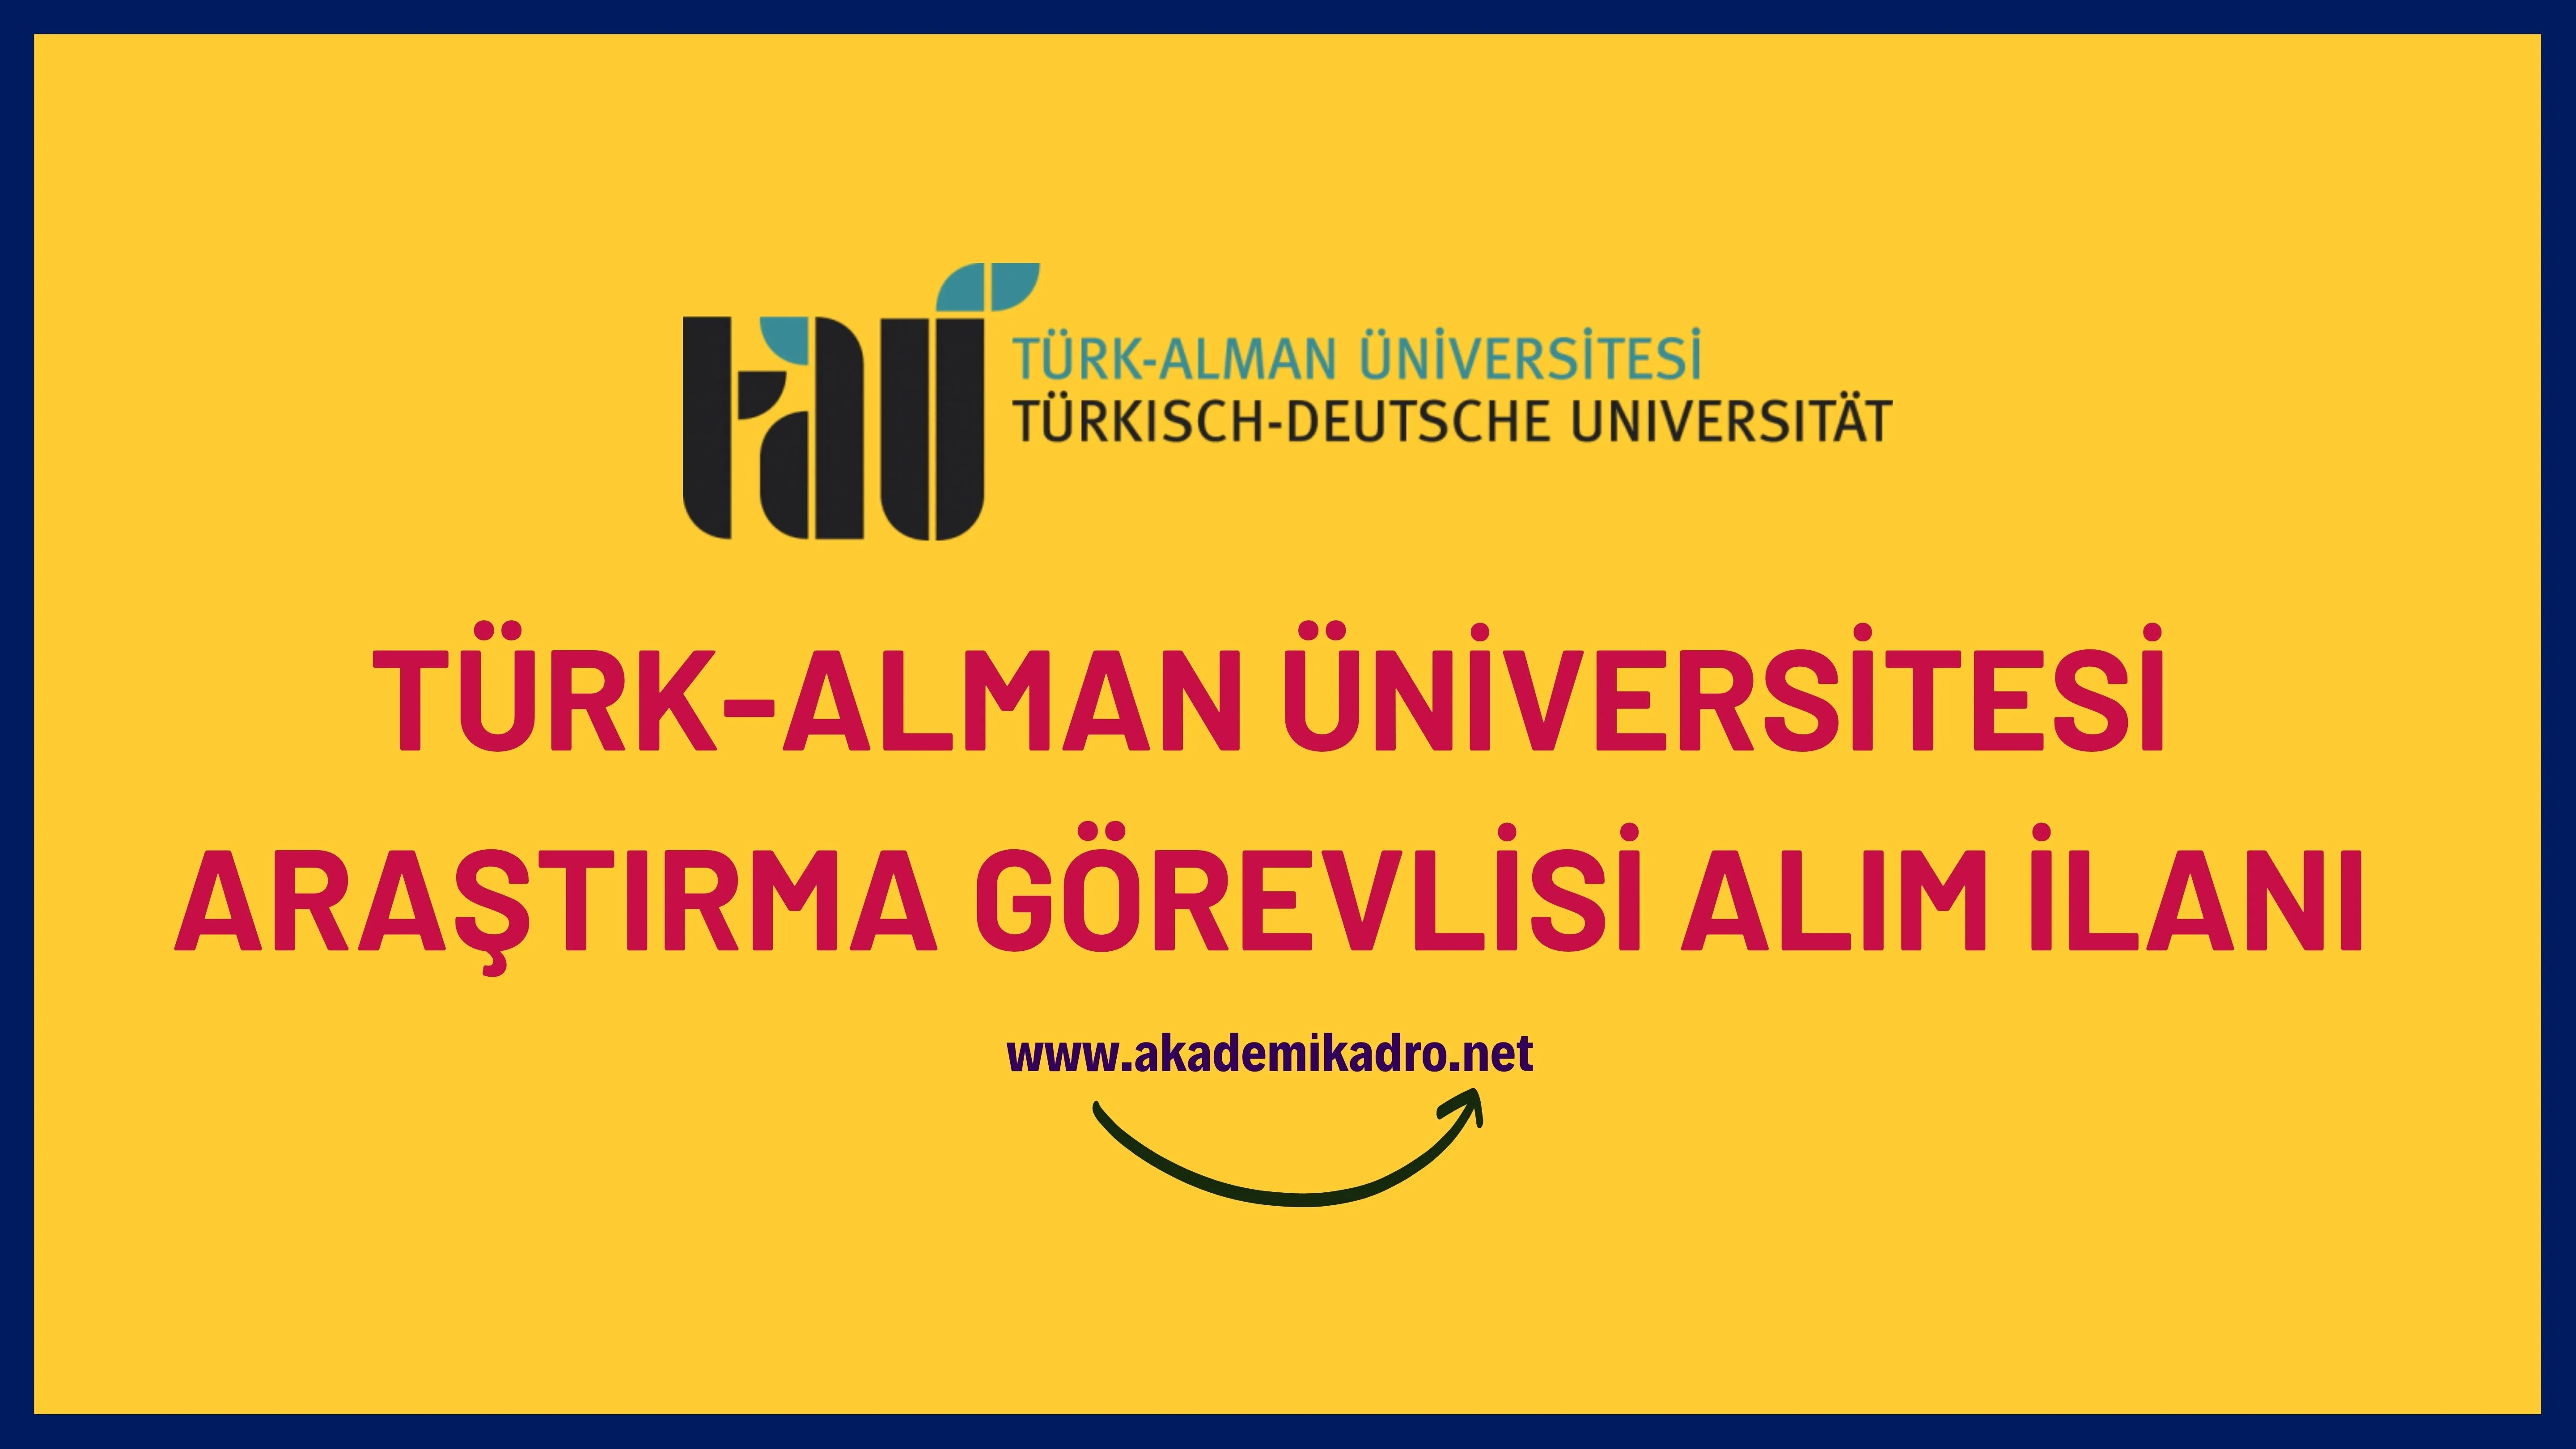 Türk-Alman Üniversitesi Araştırma görevlisi alacak. Son başvuru tarihi 02 Ocak 2023.